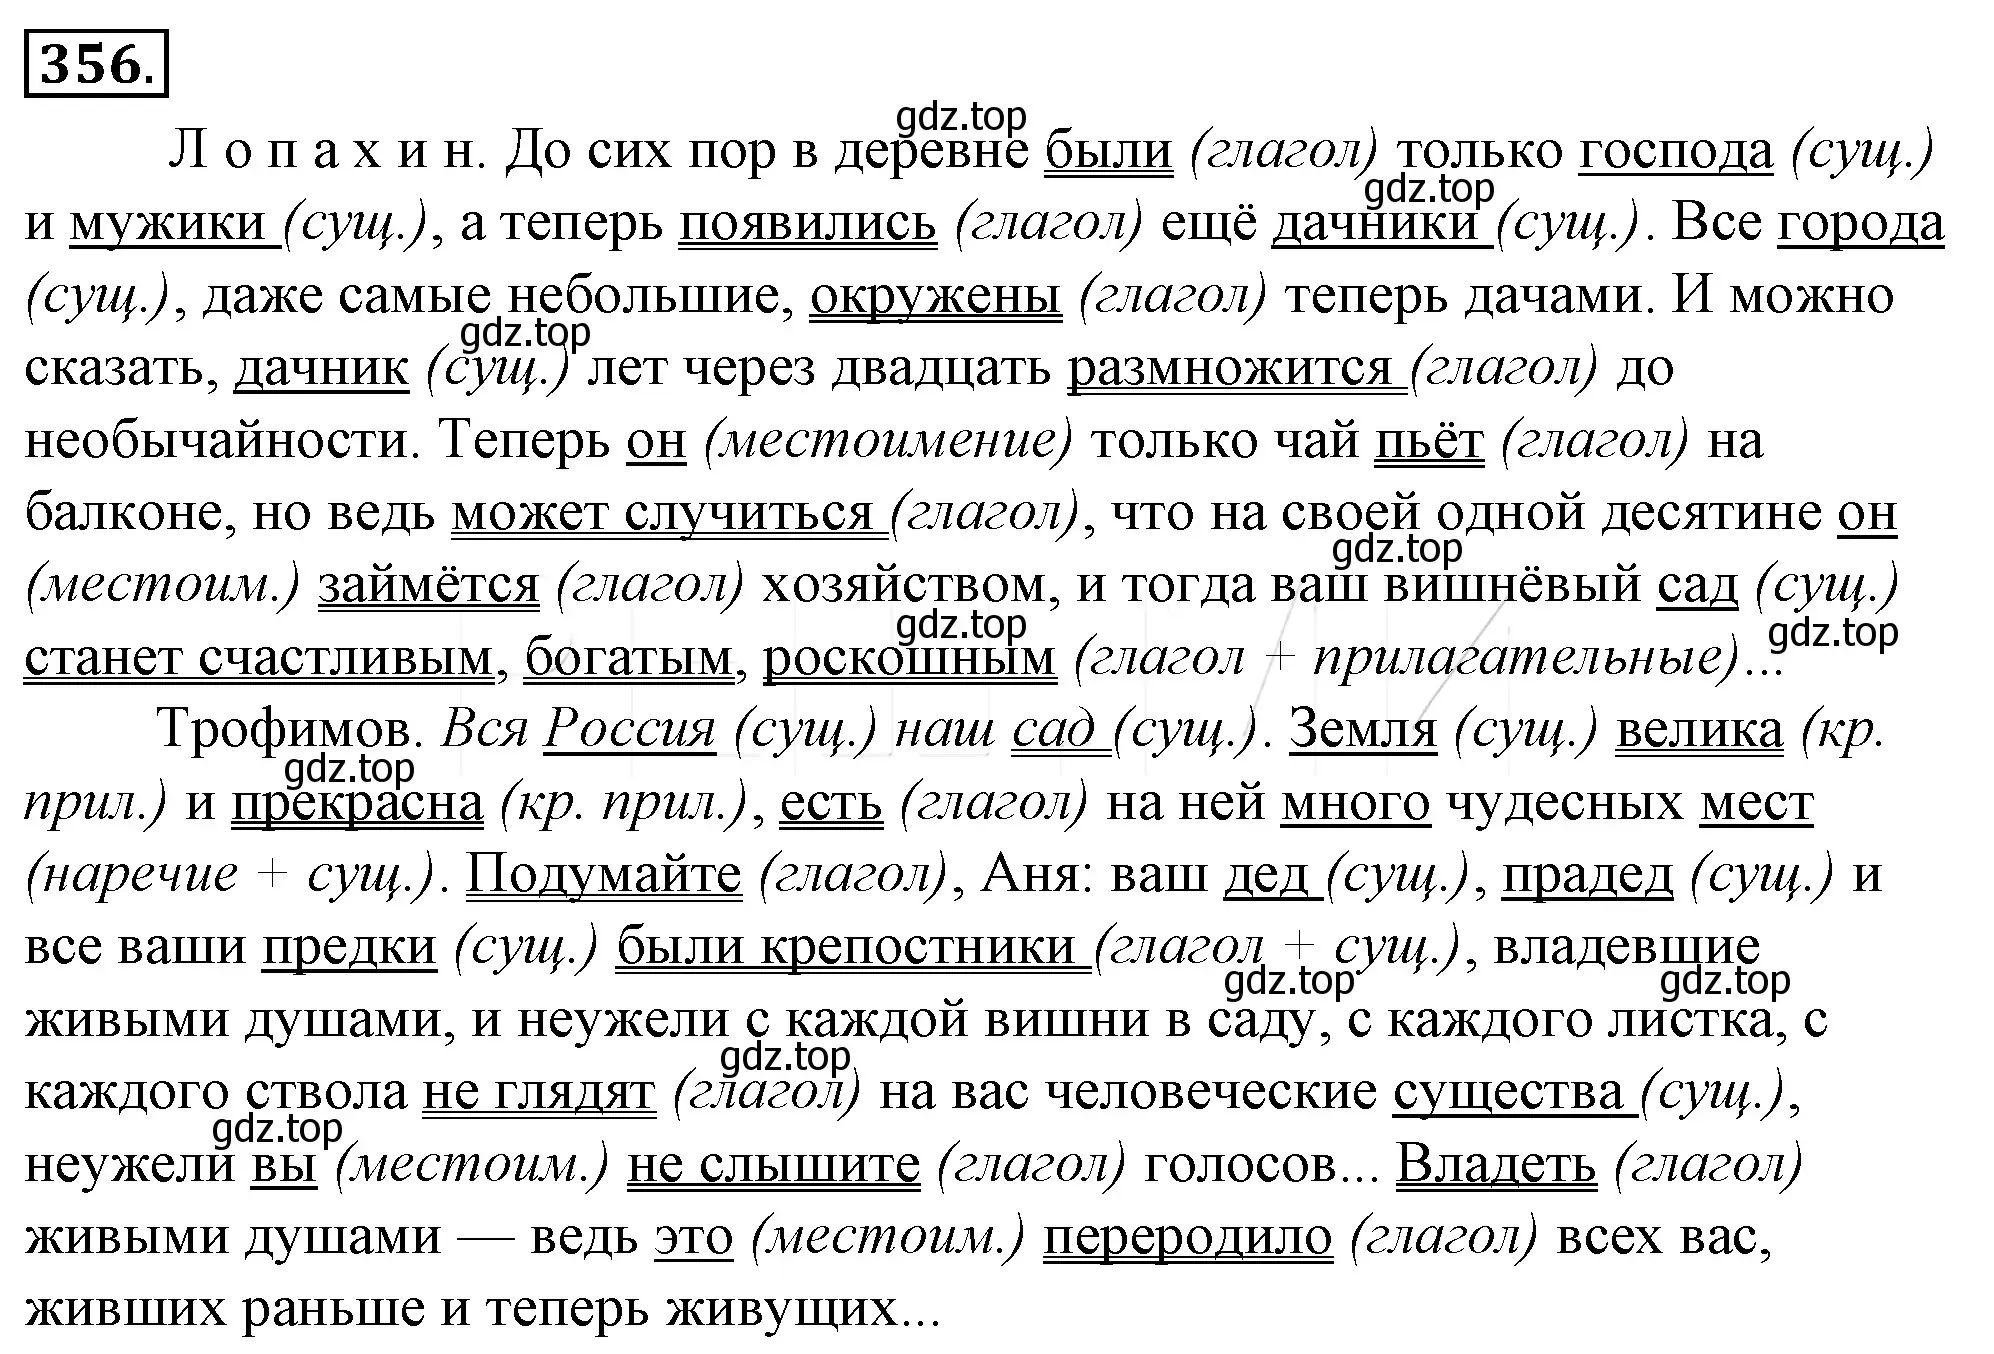 Решение 4. номер 21 (страница 28) гдз по русскому языку 10-11 класс Гольцова, Шамшин, учебник 2 часть